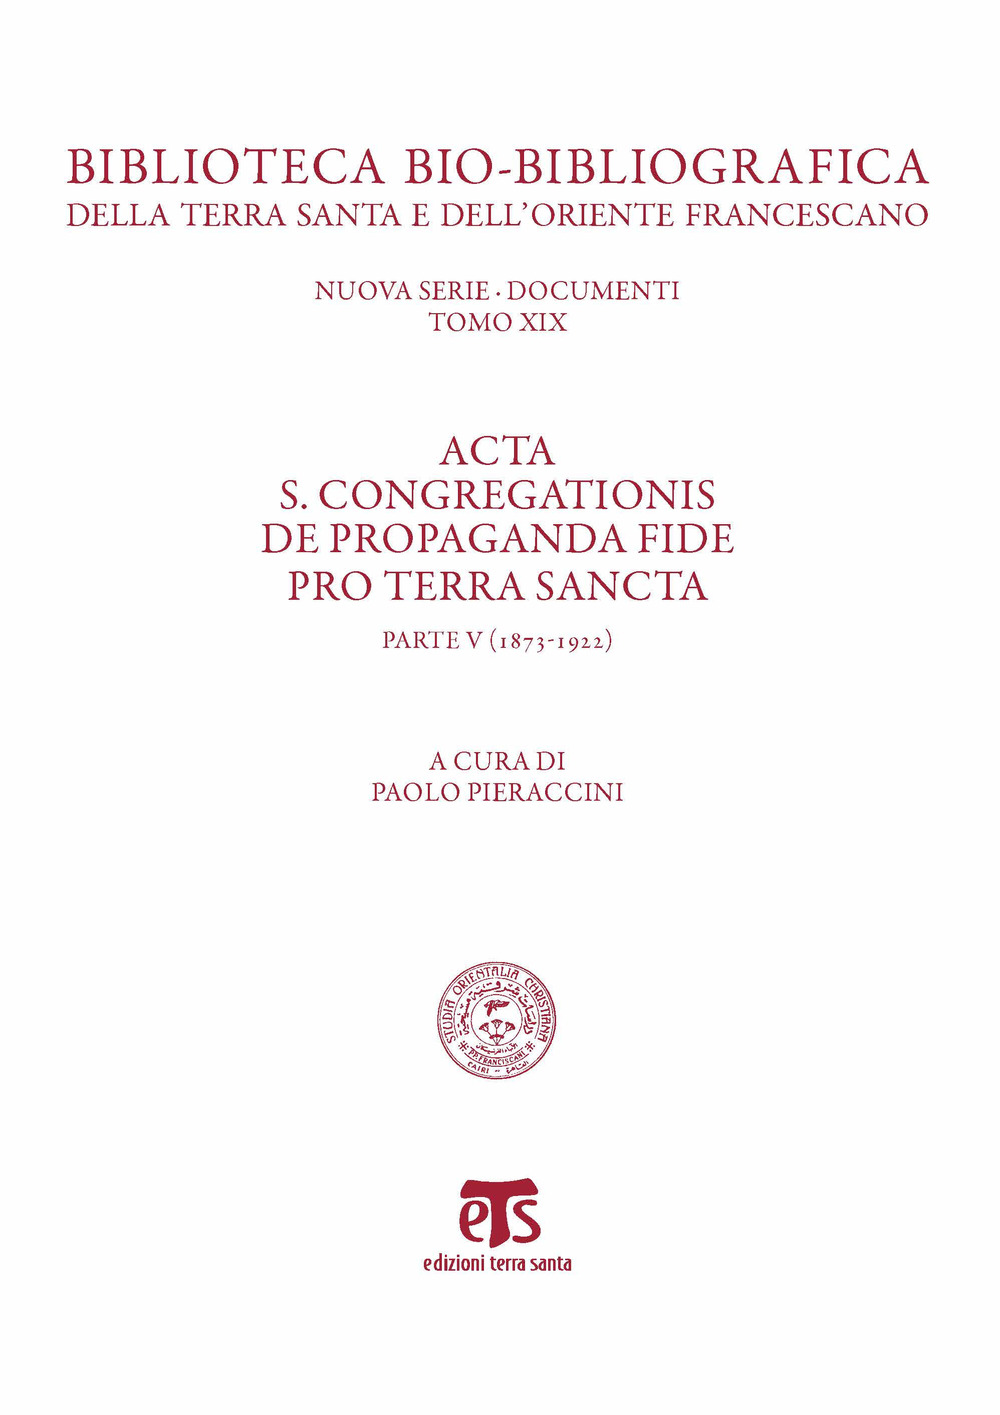 Acta S. Congregationis de Propaganda Fide pro Terra Sancta. Vol. 5: 1873-1922